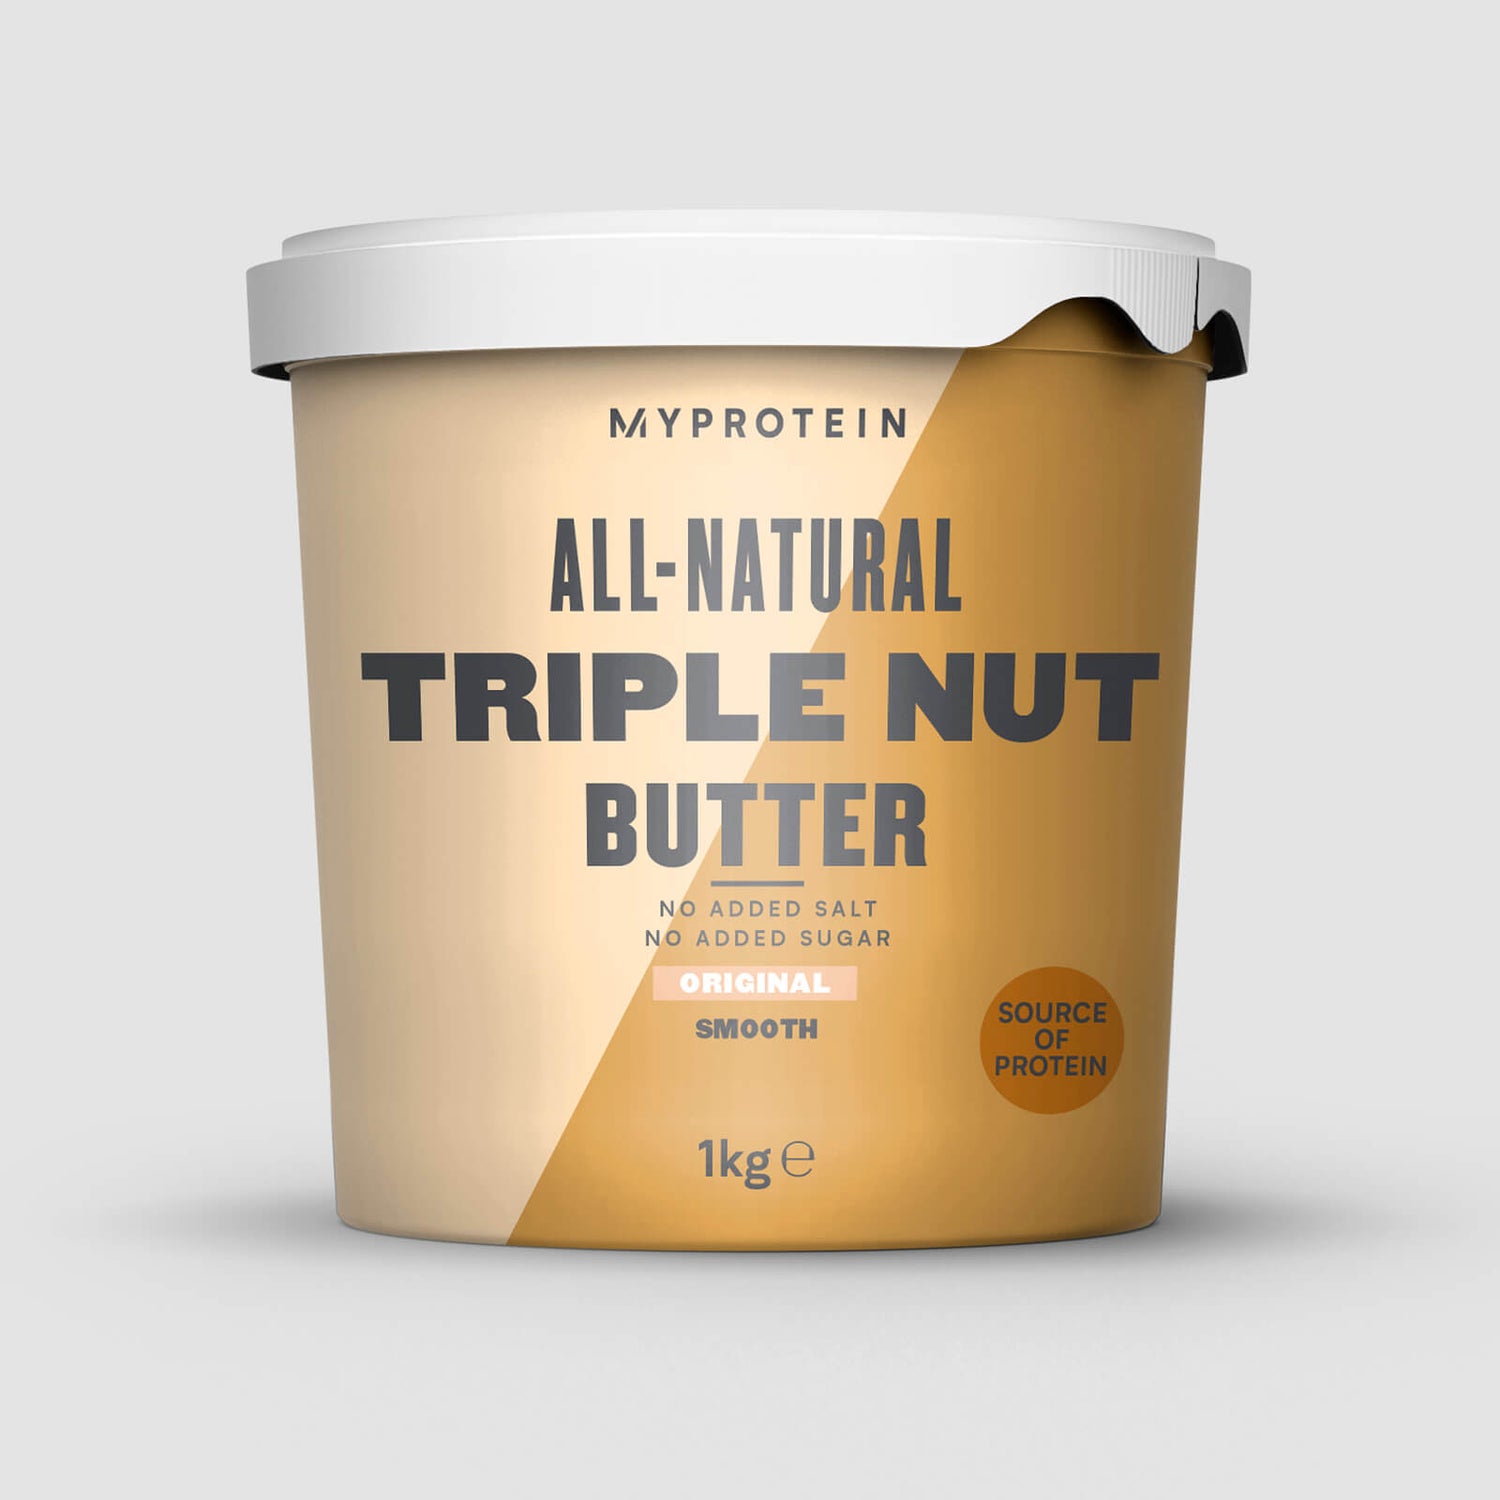 Natūralus užtepas iš trijų riešutų rūšių „All-Natural Triple Nut Butter“ - 1kg